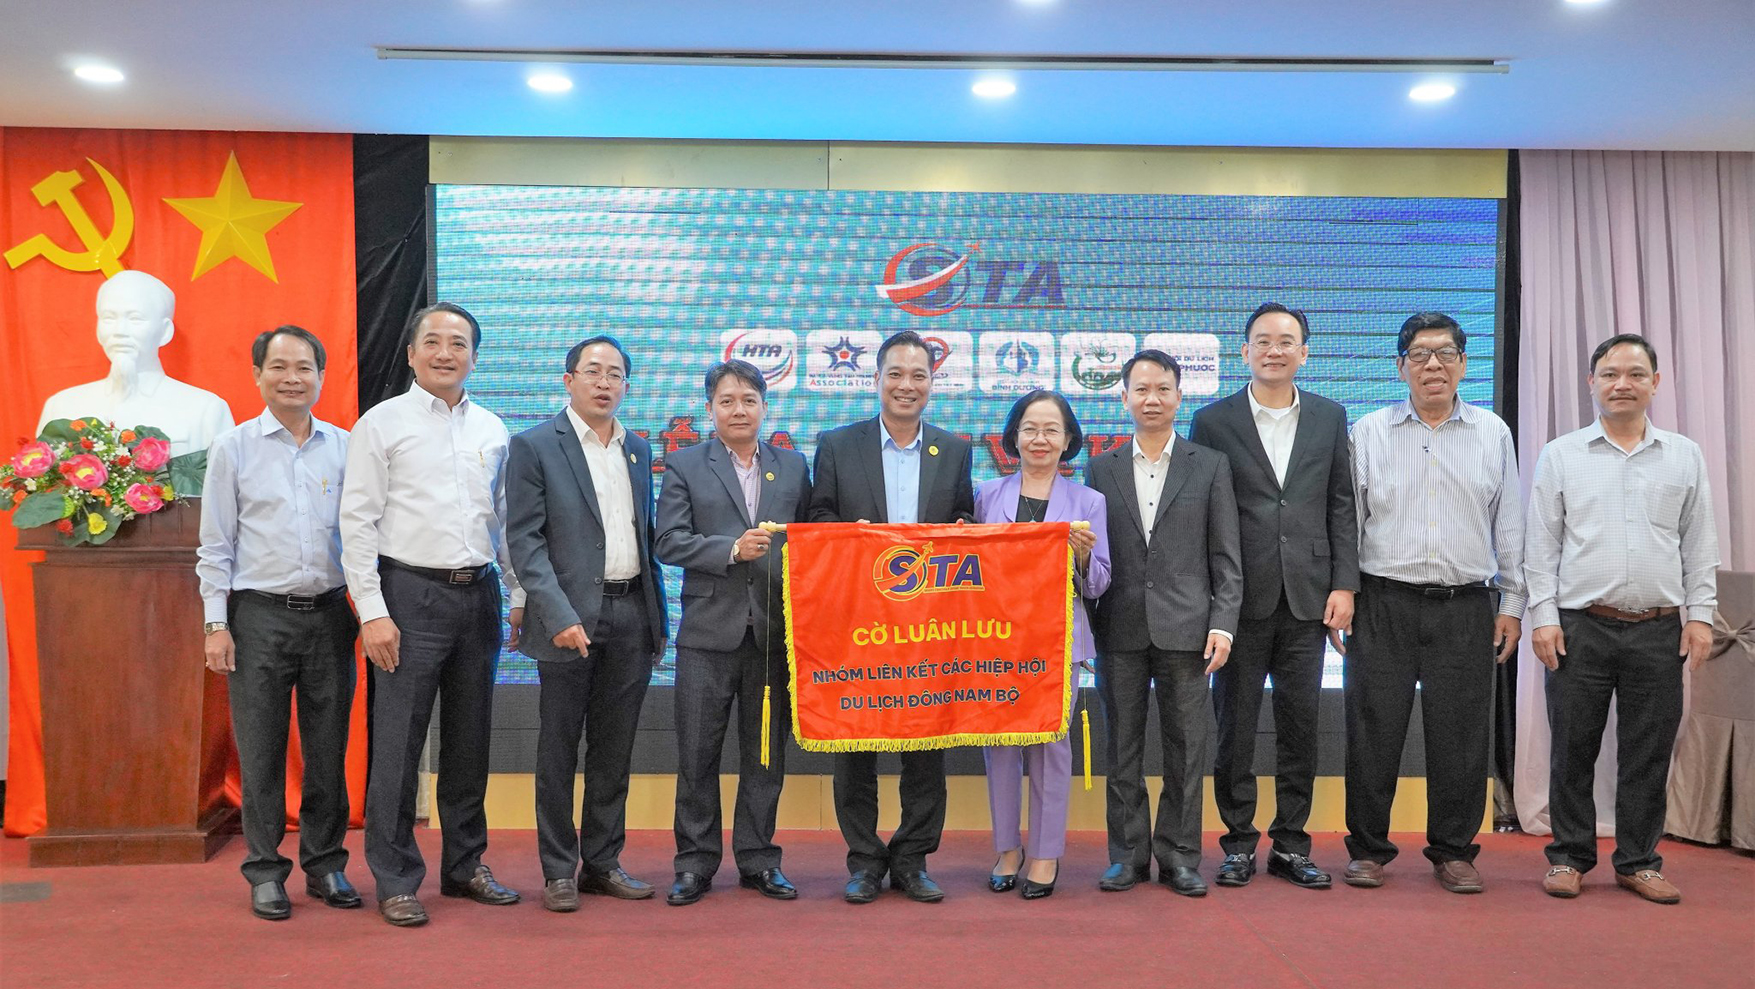 HHDL Bà Rịa-Vũng Tàu nhận cờ luân lưu trưởng ban đại diện Nhóm liên kết năm 2023